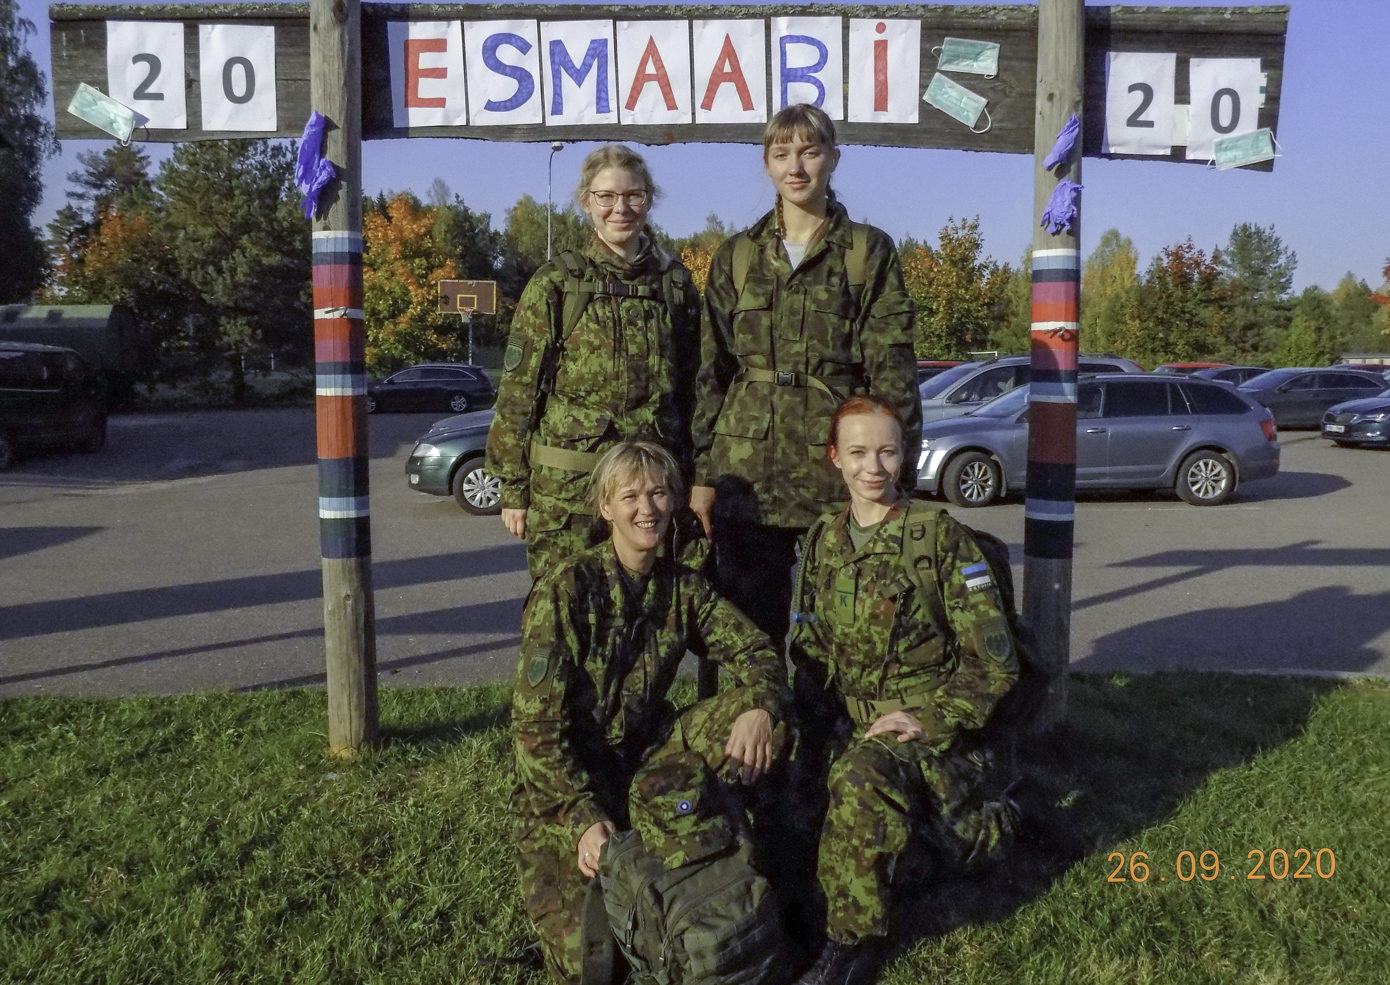 Naiskodukaitse esmaabi erialavõistluse võidu tõid koju Laura Vill (taga vasakult) ja Laura Järvpõld, Jaanika Sild (ees vasakult) ja Maie Vumba. Foto: ERAKOGU